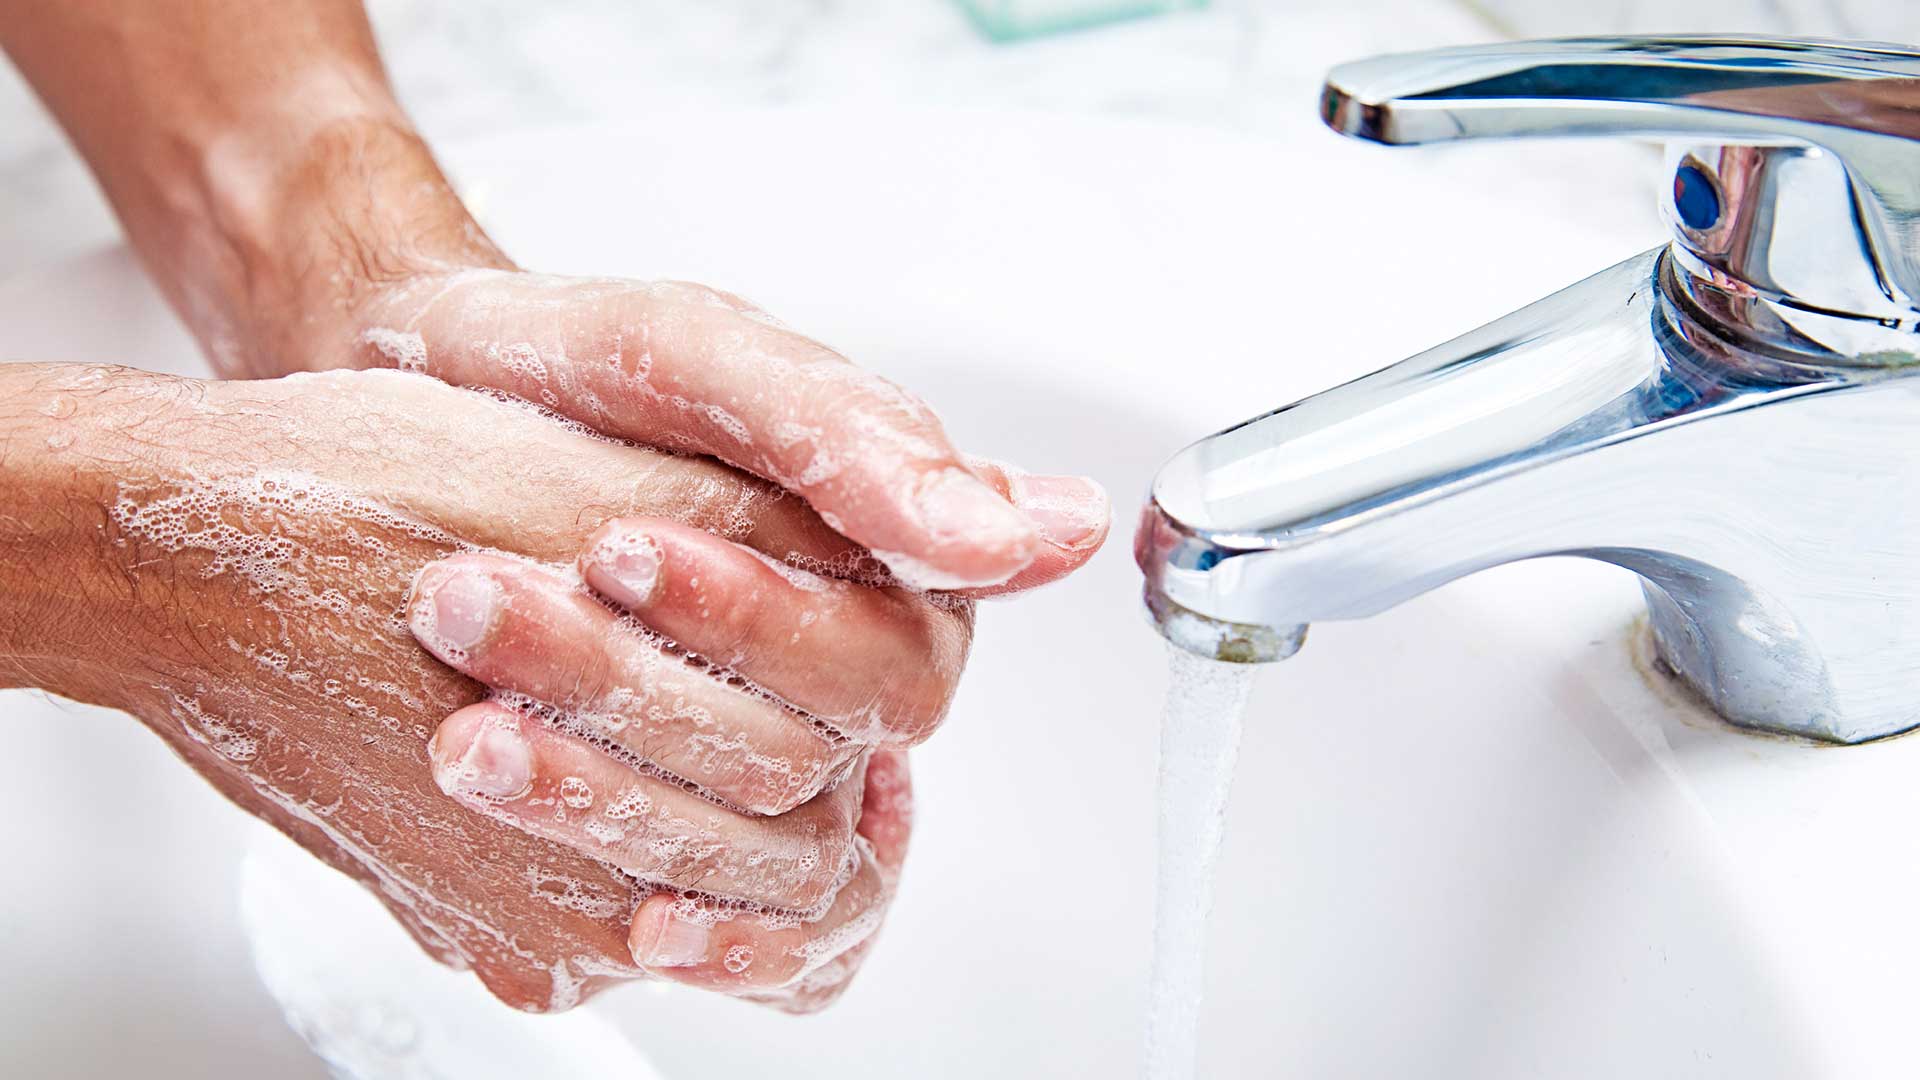 برنامج تدريبي بمناسبة " اليوم العالمي لغسل اليدين " بعبري